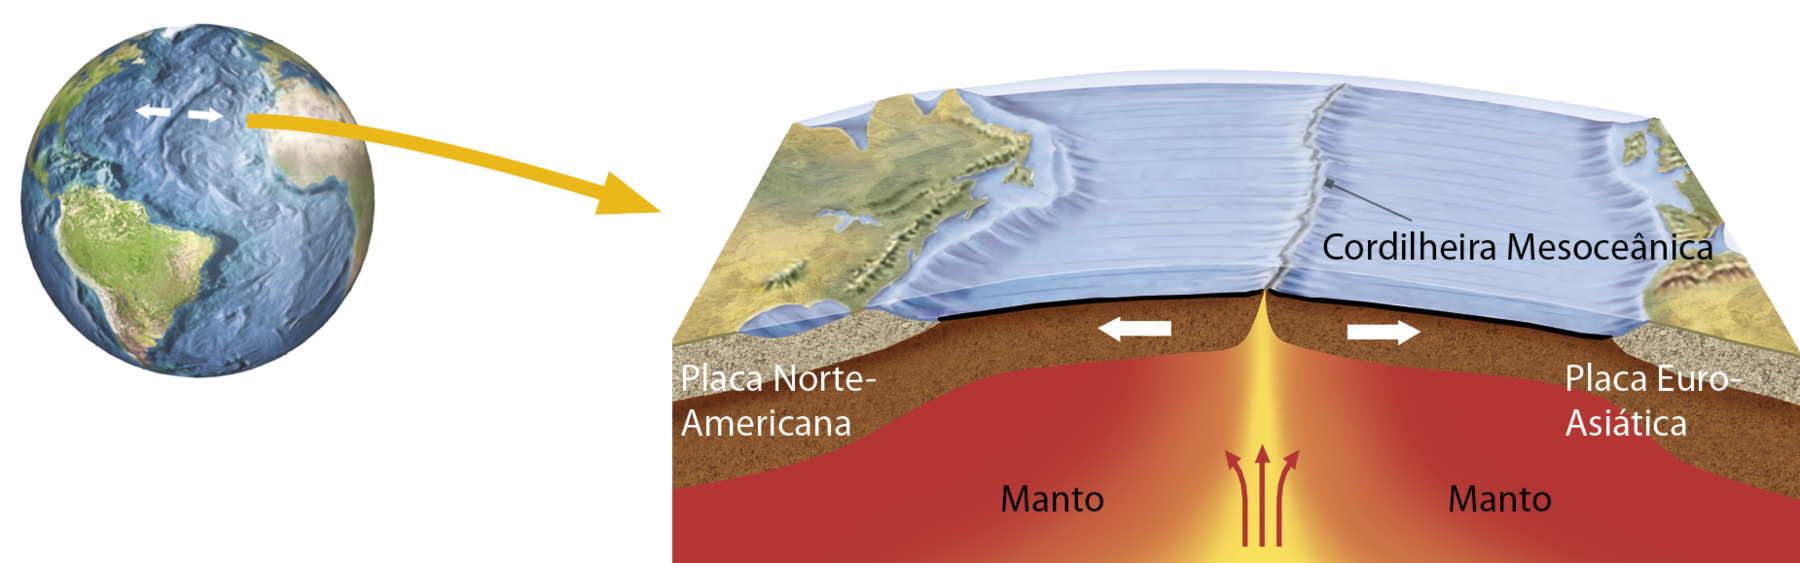 Ilustração. Cordilheira Mesoceânica. Representação do planeta Terra no canto esquerdo, onde duas setas pequenas e brancas apontam uma para a outra na área de uma falha no oceano Atlântico. Dessa região desponta uma seta grande e amarela indicando um bloco diagrama. Na parte superior, no assoalho do oceano está indicada a Cordilheira Mesoceânica, composta por uma divisão elevada no meio de um oceano. Abaixo, há uma camada marrom dividida ao meio: à esquerda, placa norte-americana e uma seta branca para a esquerda; à direita, placa euro-asiática e uma seta para a direita. Na parte inferior, uma camada vermelha com o nome manto. No centro do manto há três setas vermelhas apontadas para cima indicando o movimento de convecção do manto.